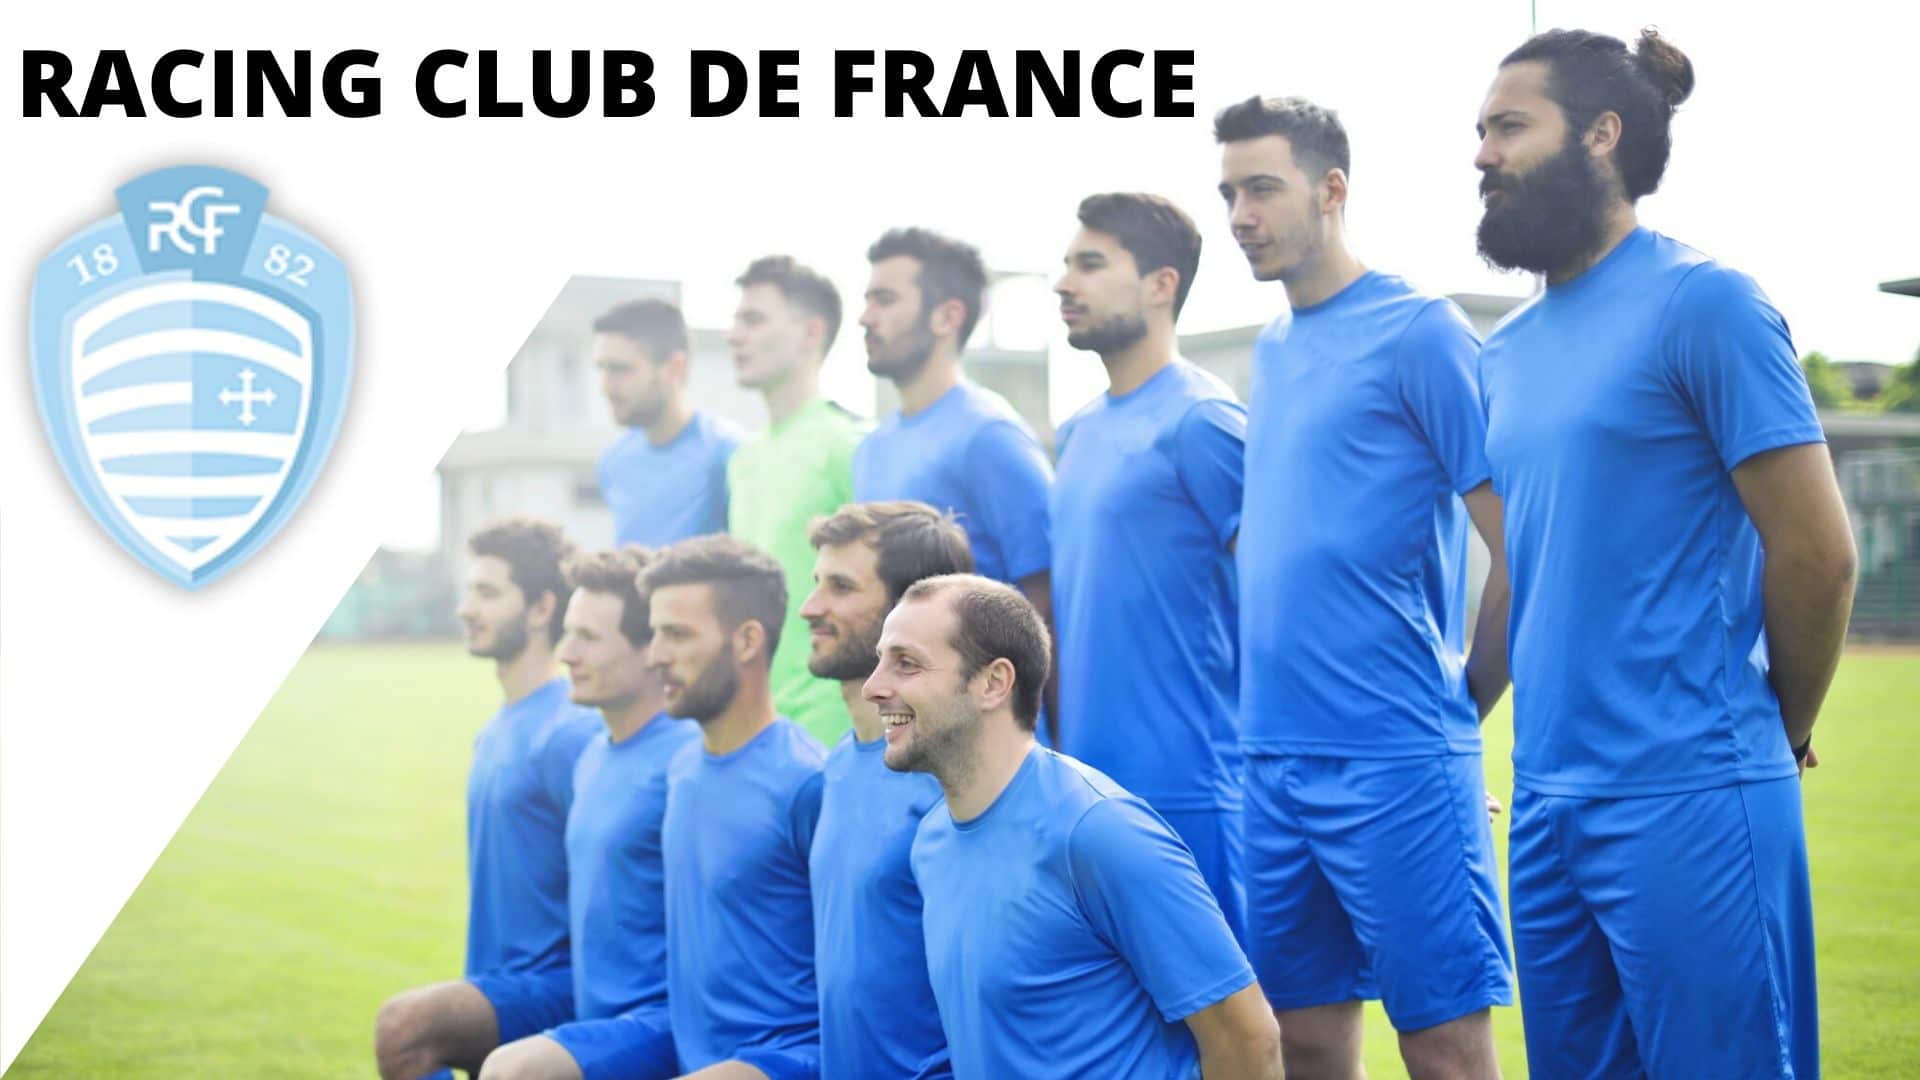 RACING CLUB DE FRANCE-92 (2)